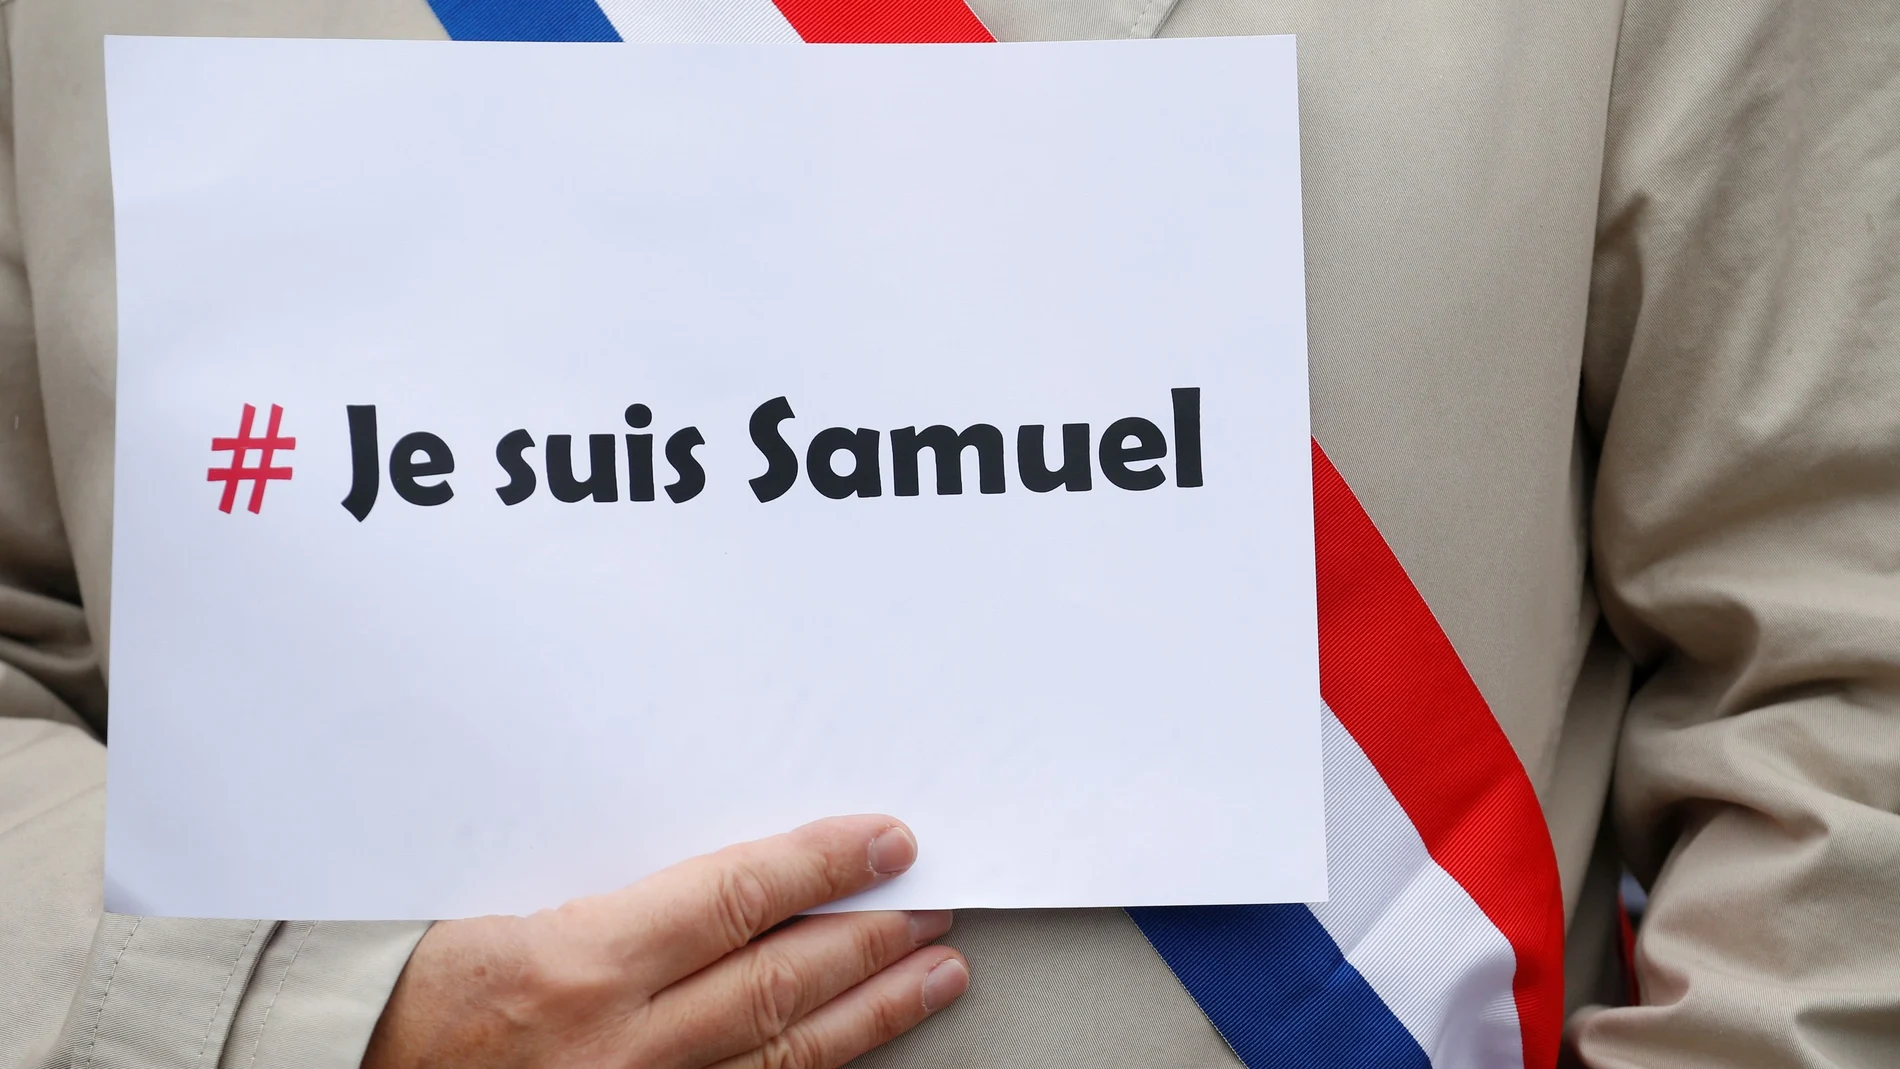 Una persona sujeta un cartel con la frase "Je suis Samuel" en tributo a Samuel Paty, el profesor francés asesinado por un yihadista en París, durante la manifestación multitudinaria en repulsa.